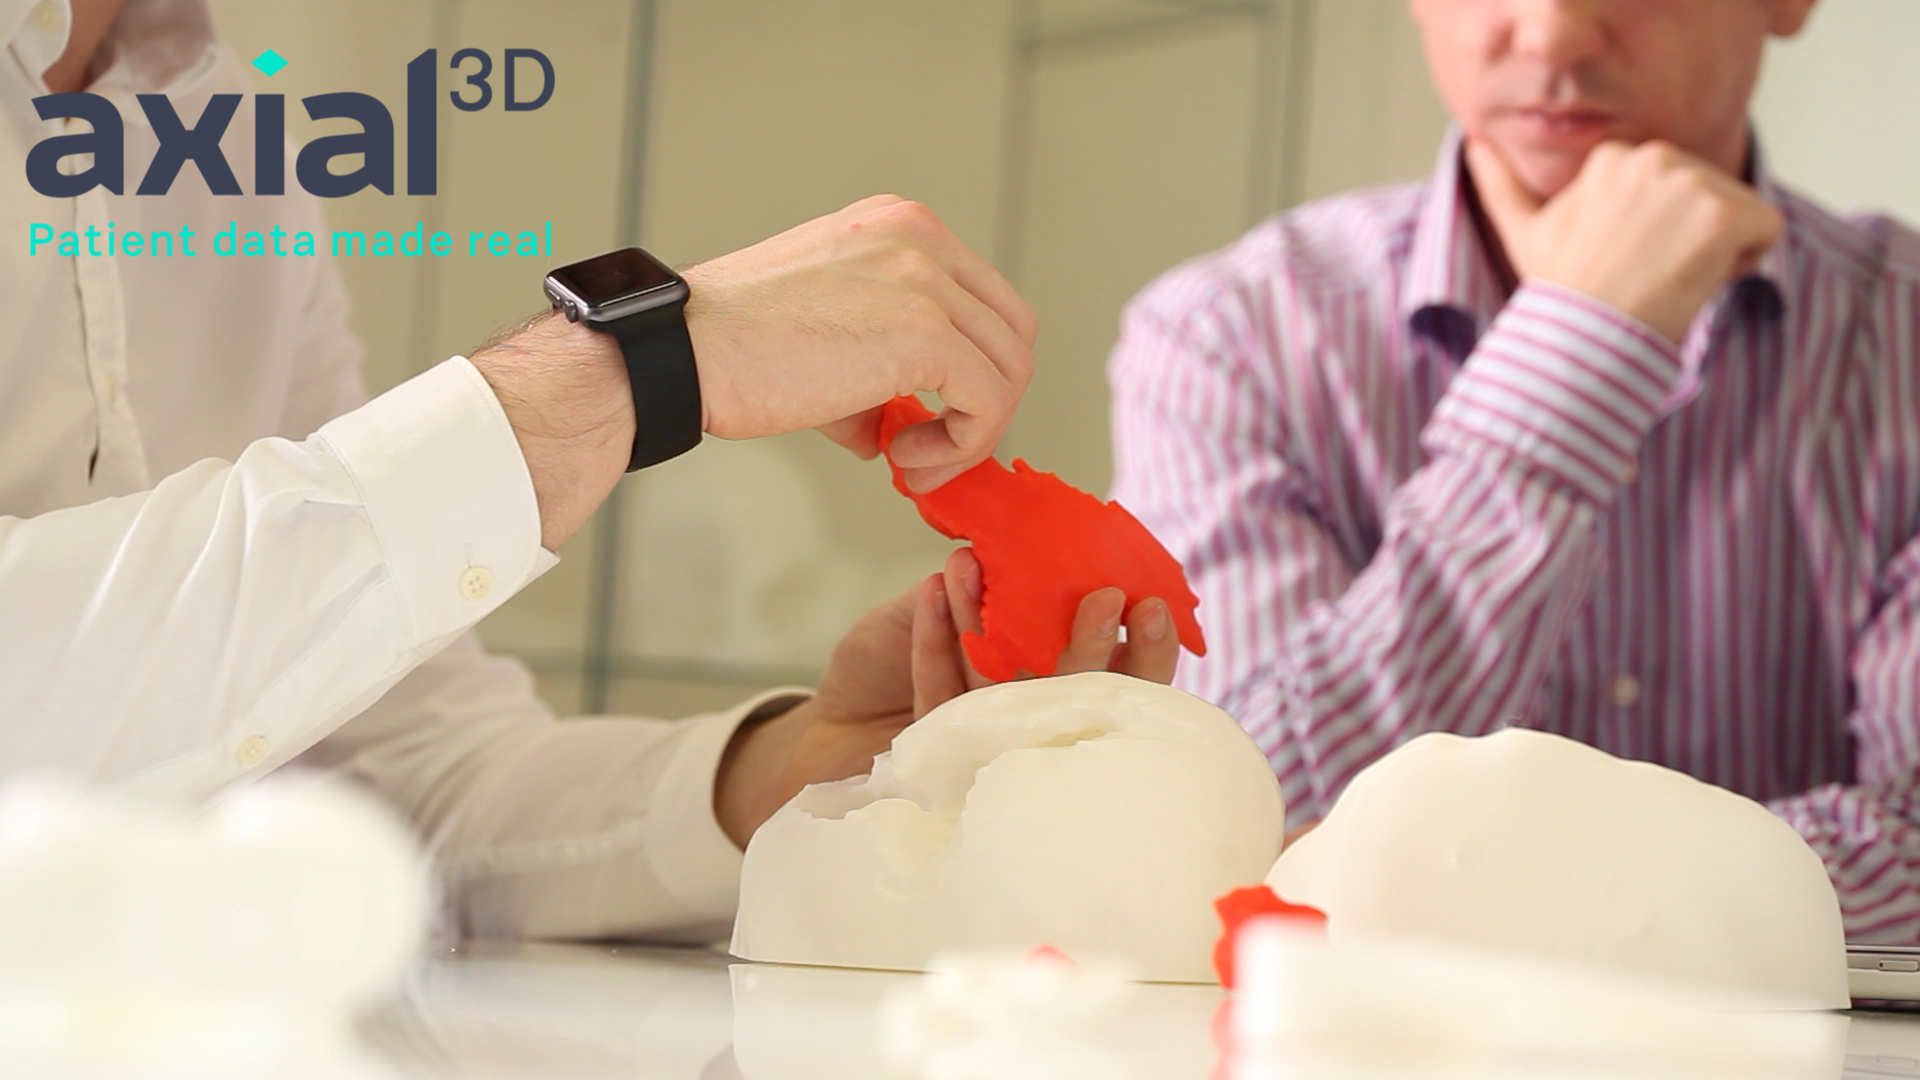 Axial3D - 3D printed medical models